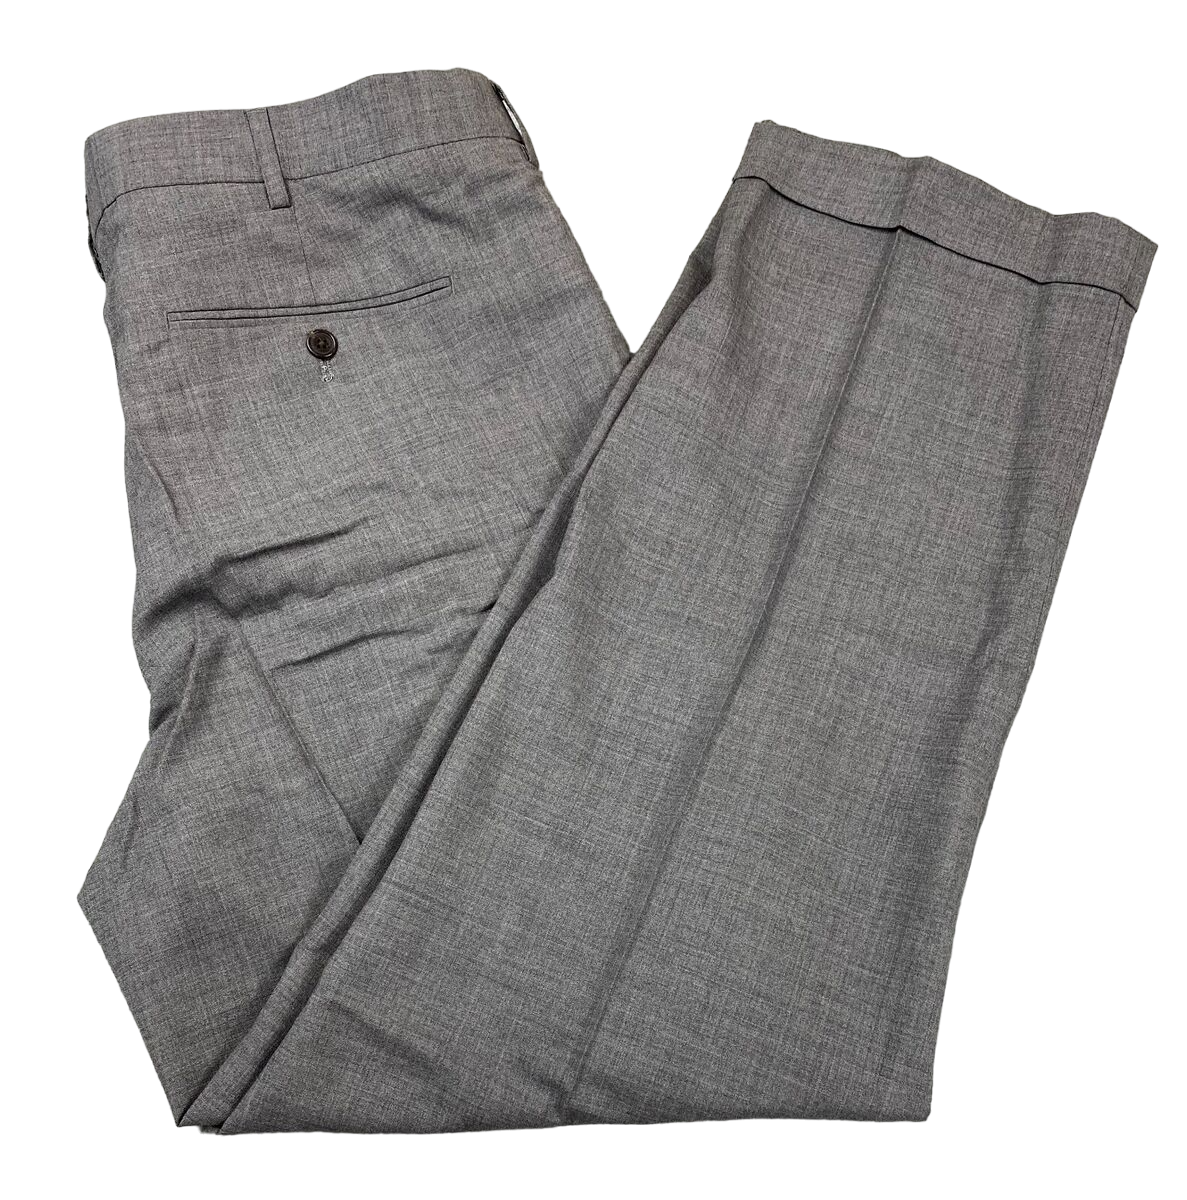 Lands' End Men's Traditional Fit PLT Wool Dress Pants Gray V10325